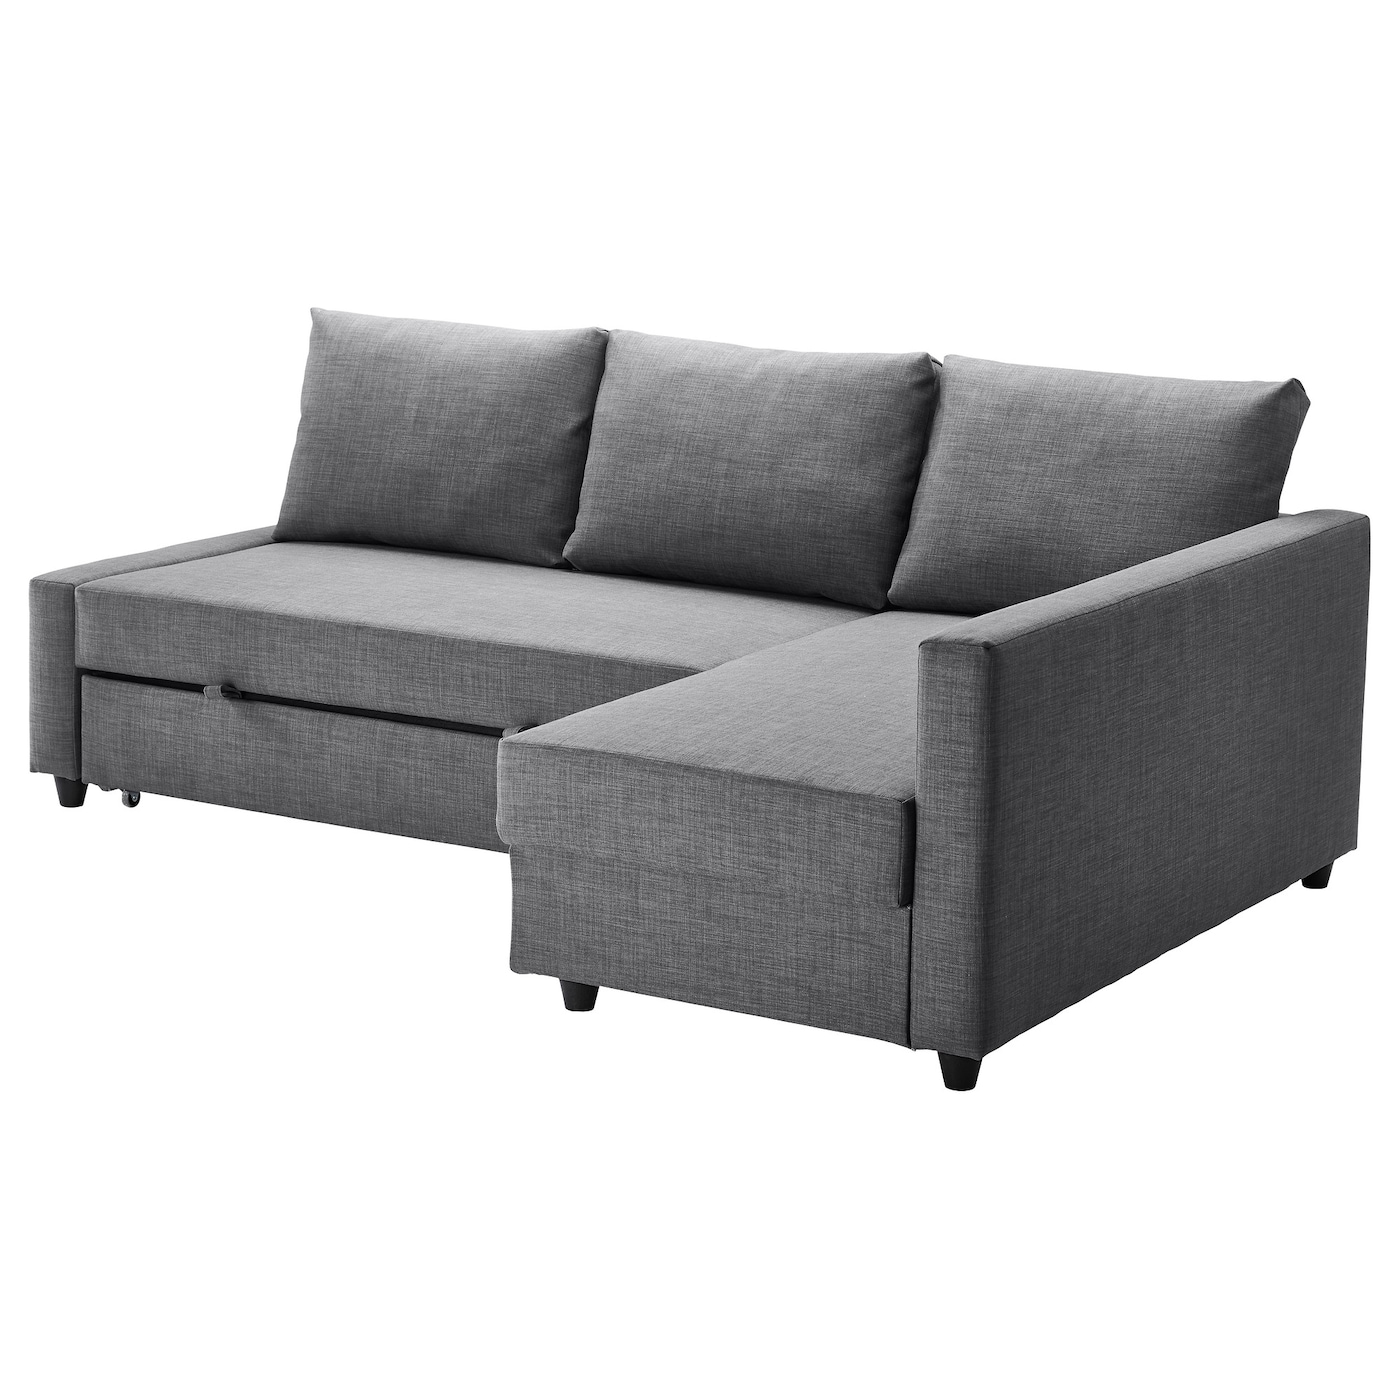 ФРИХЕТЭН Диван-кровать угловой + место для хранения, Скифтебо темно-серый FRIHETEN IKEA